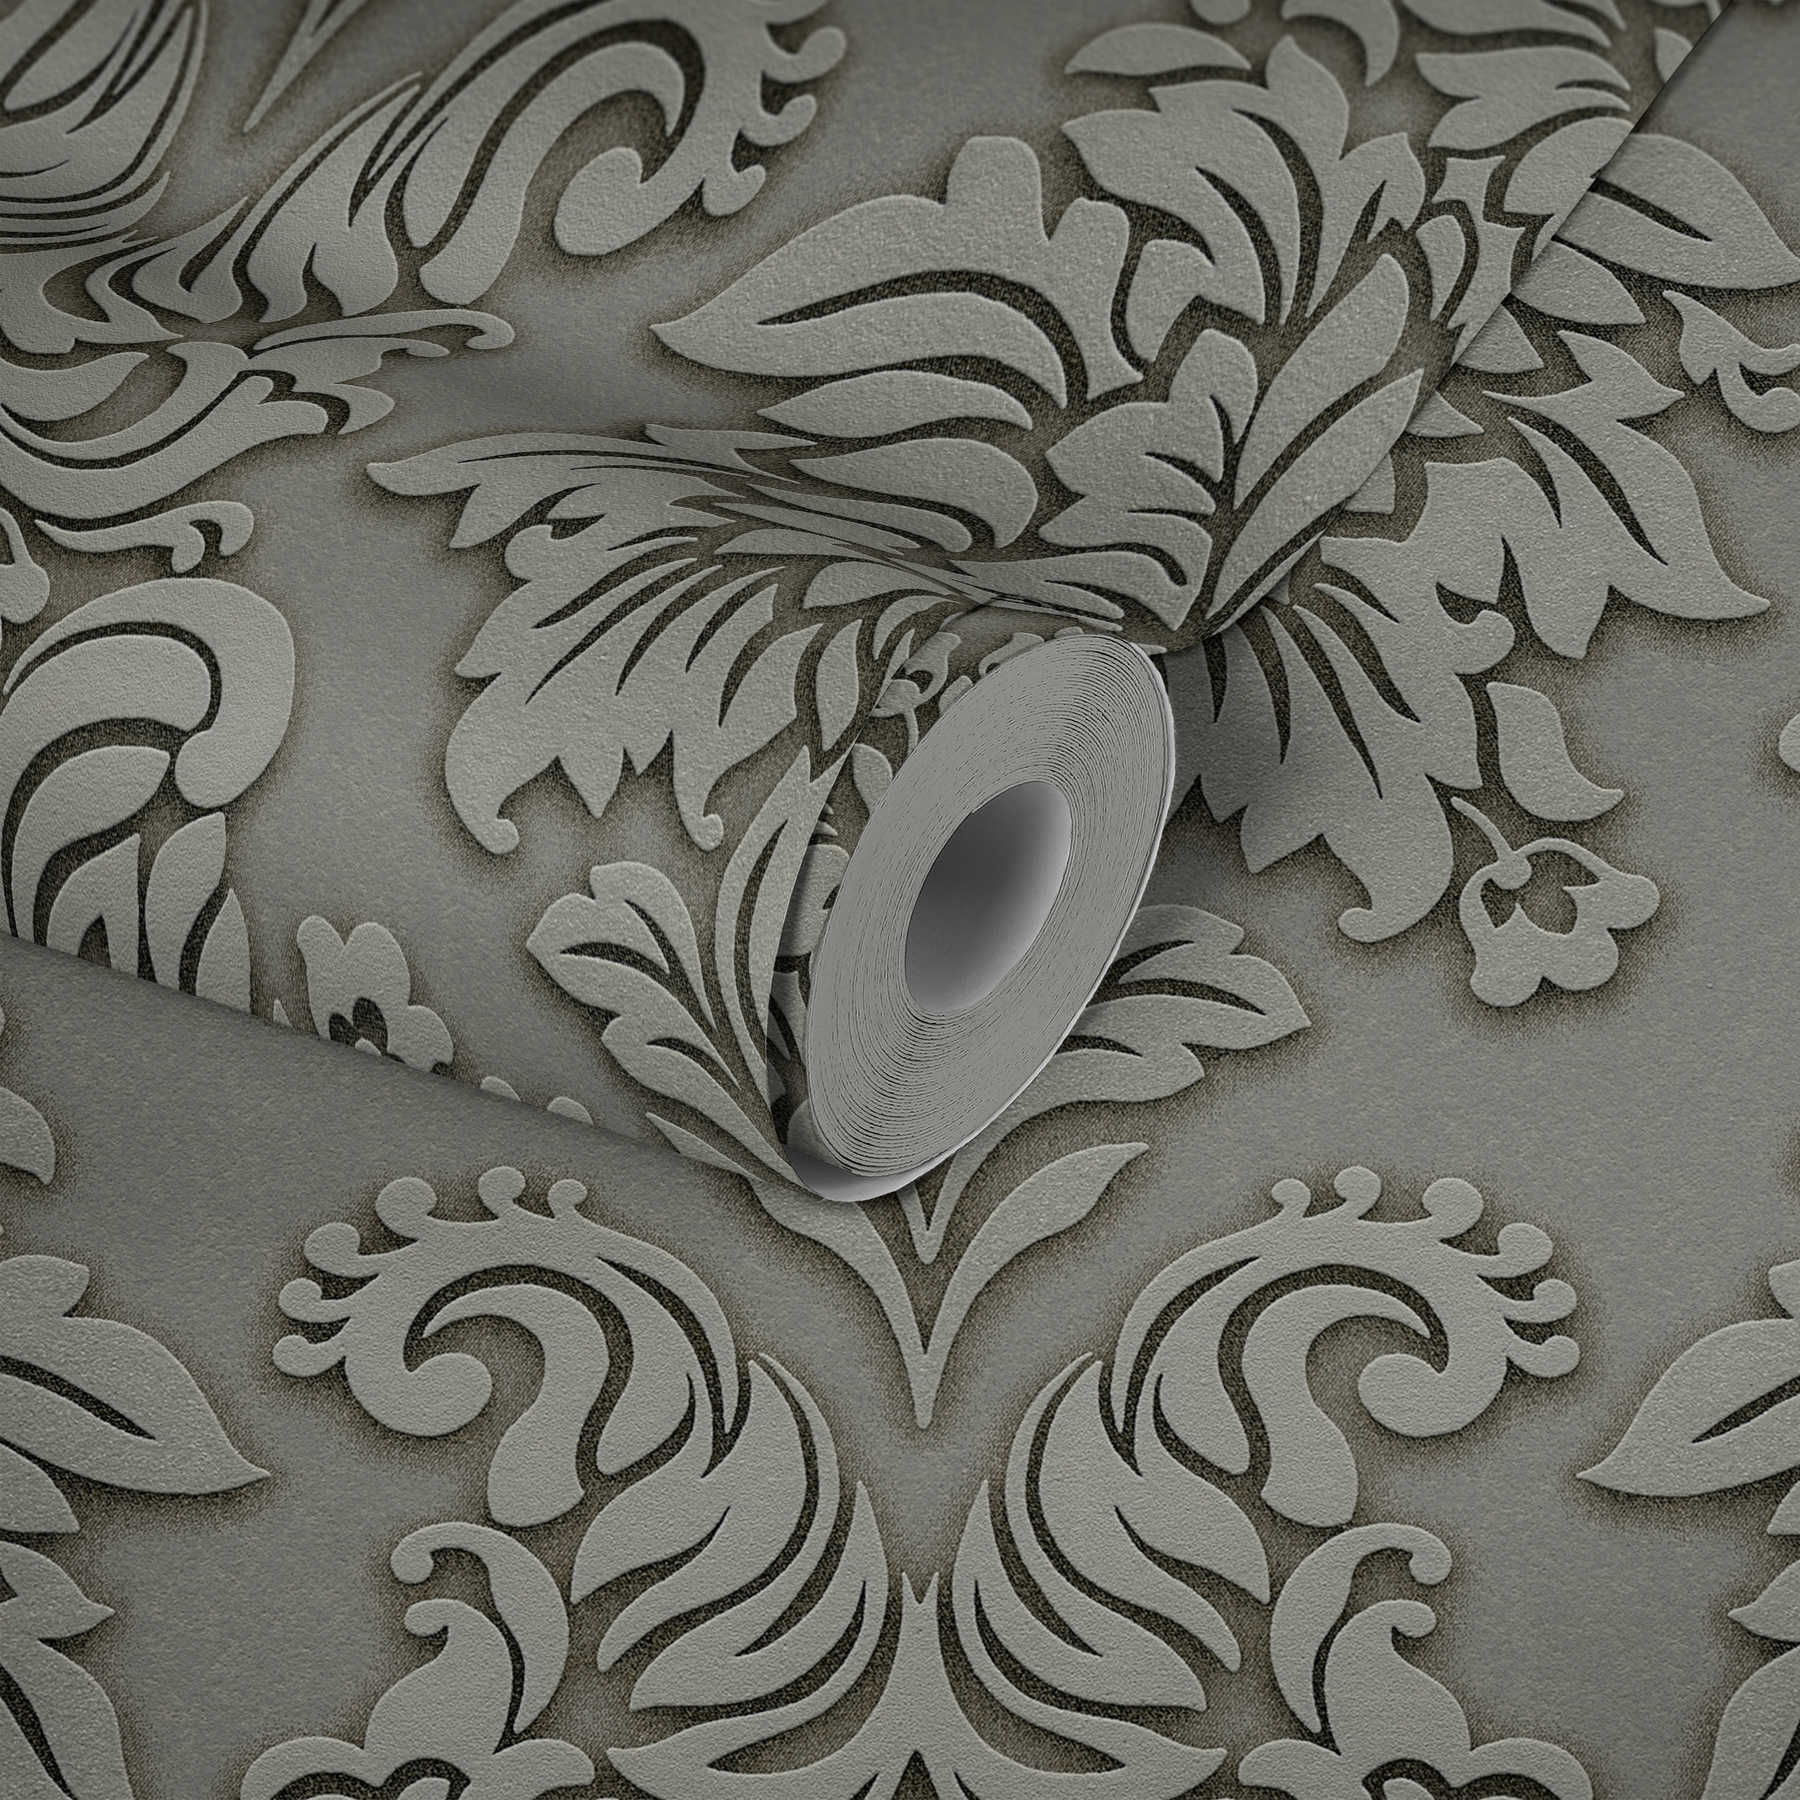             Adornos de papel pintado barroco con efecto de brillo - gris, plata, beige
        